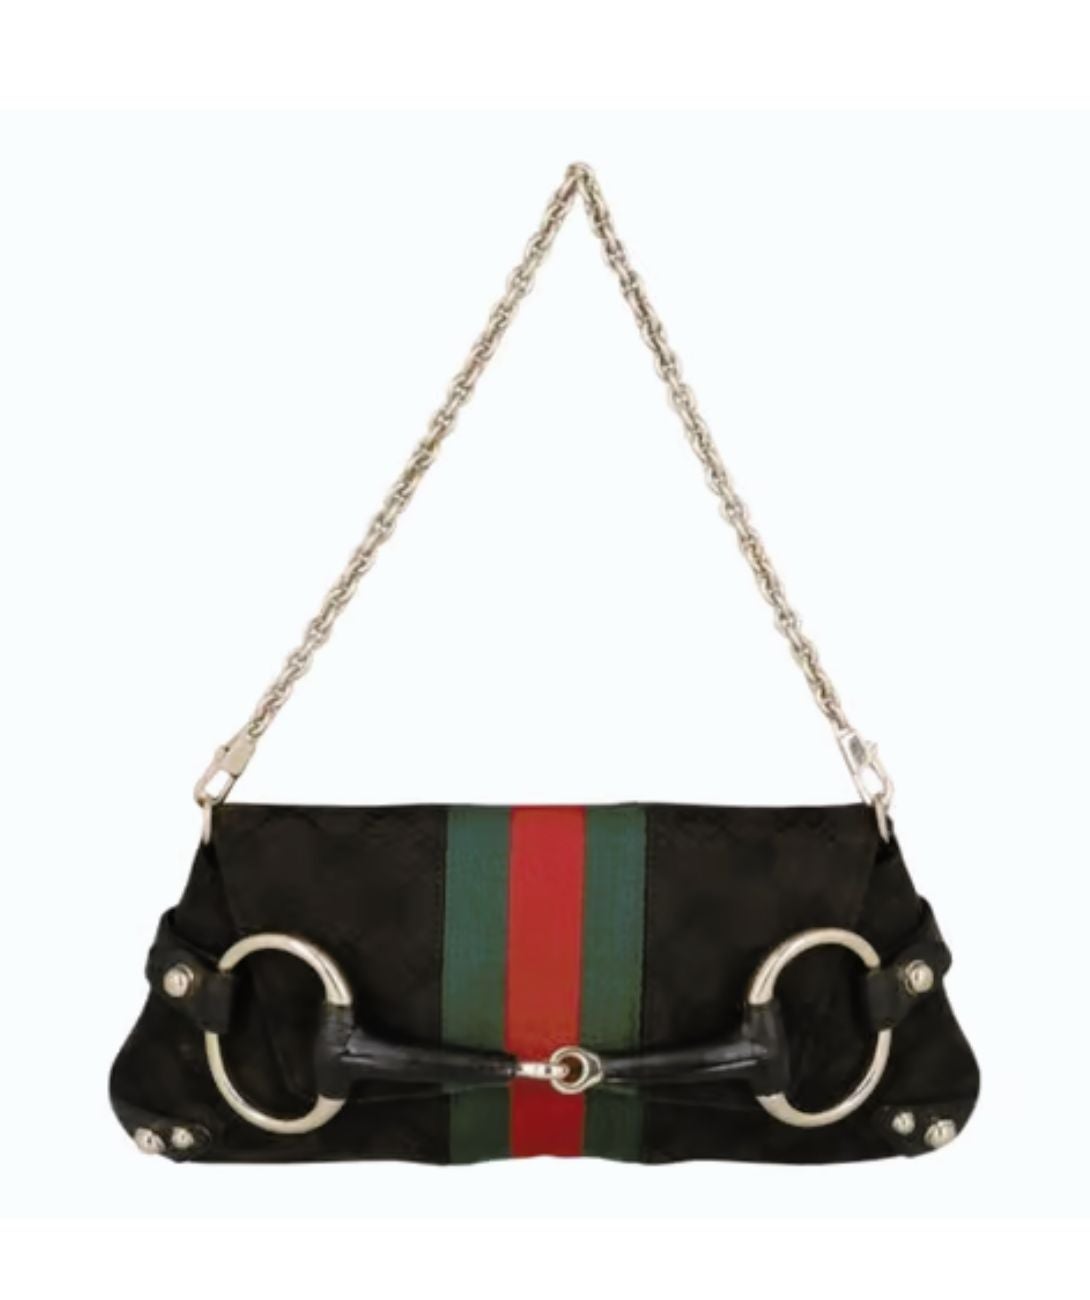 Gucci + Interlocking G Faux-Raffia Tote Bag